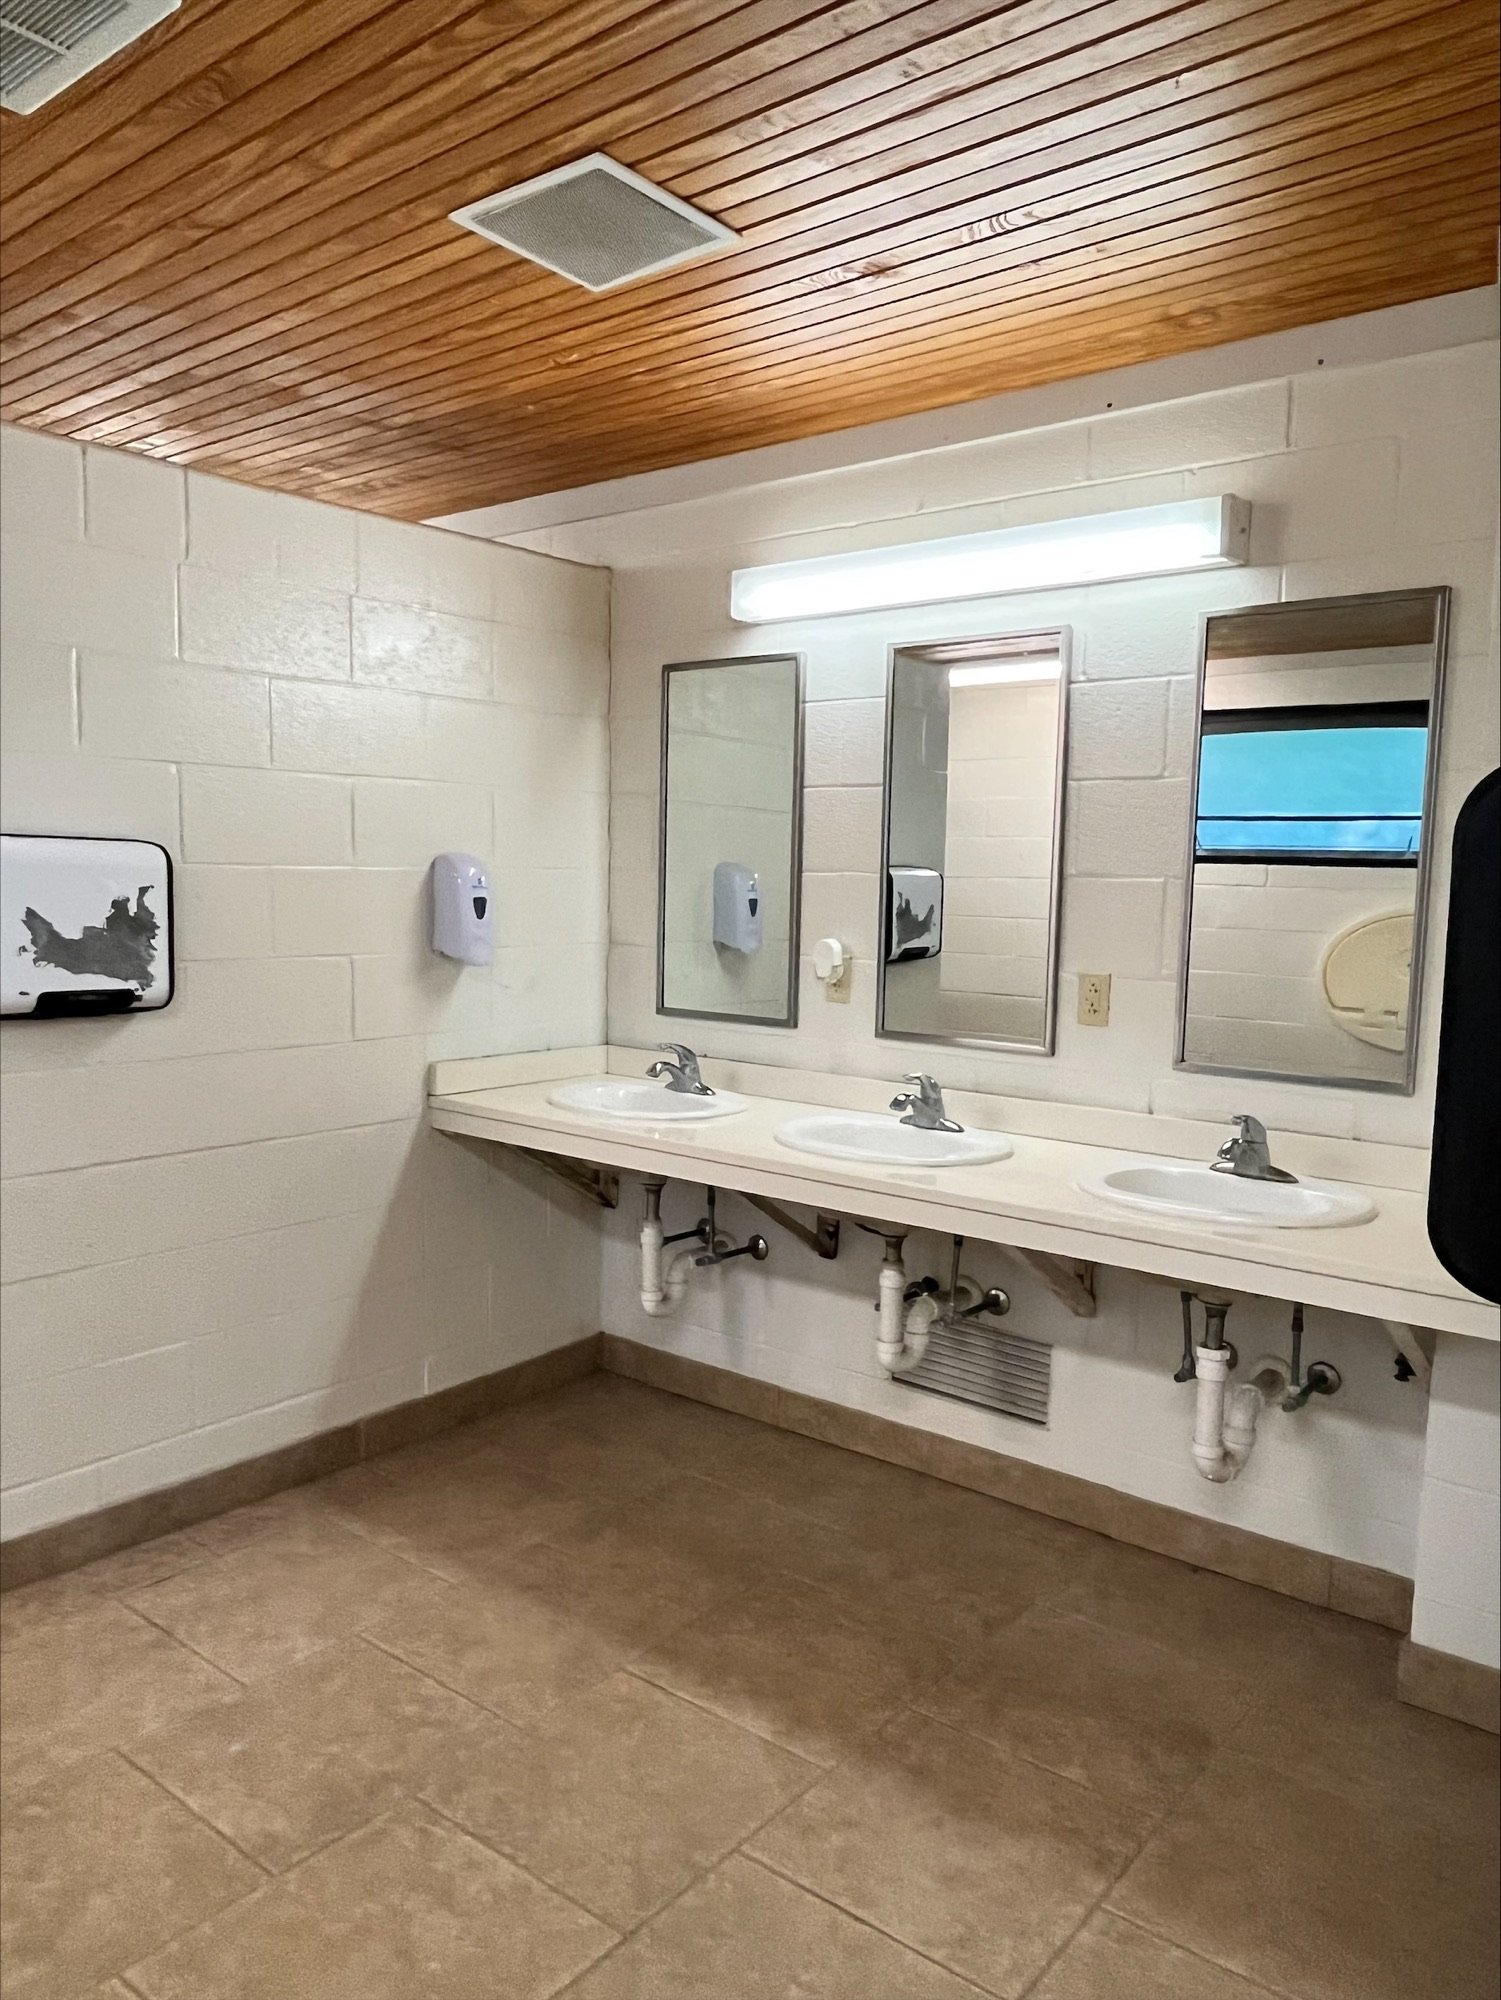 Nolin Lake State park bathroom sinks.jpeg